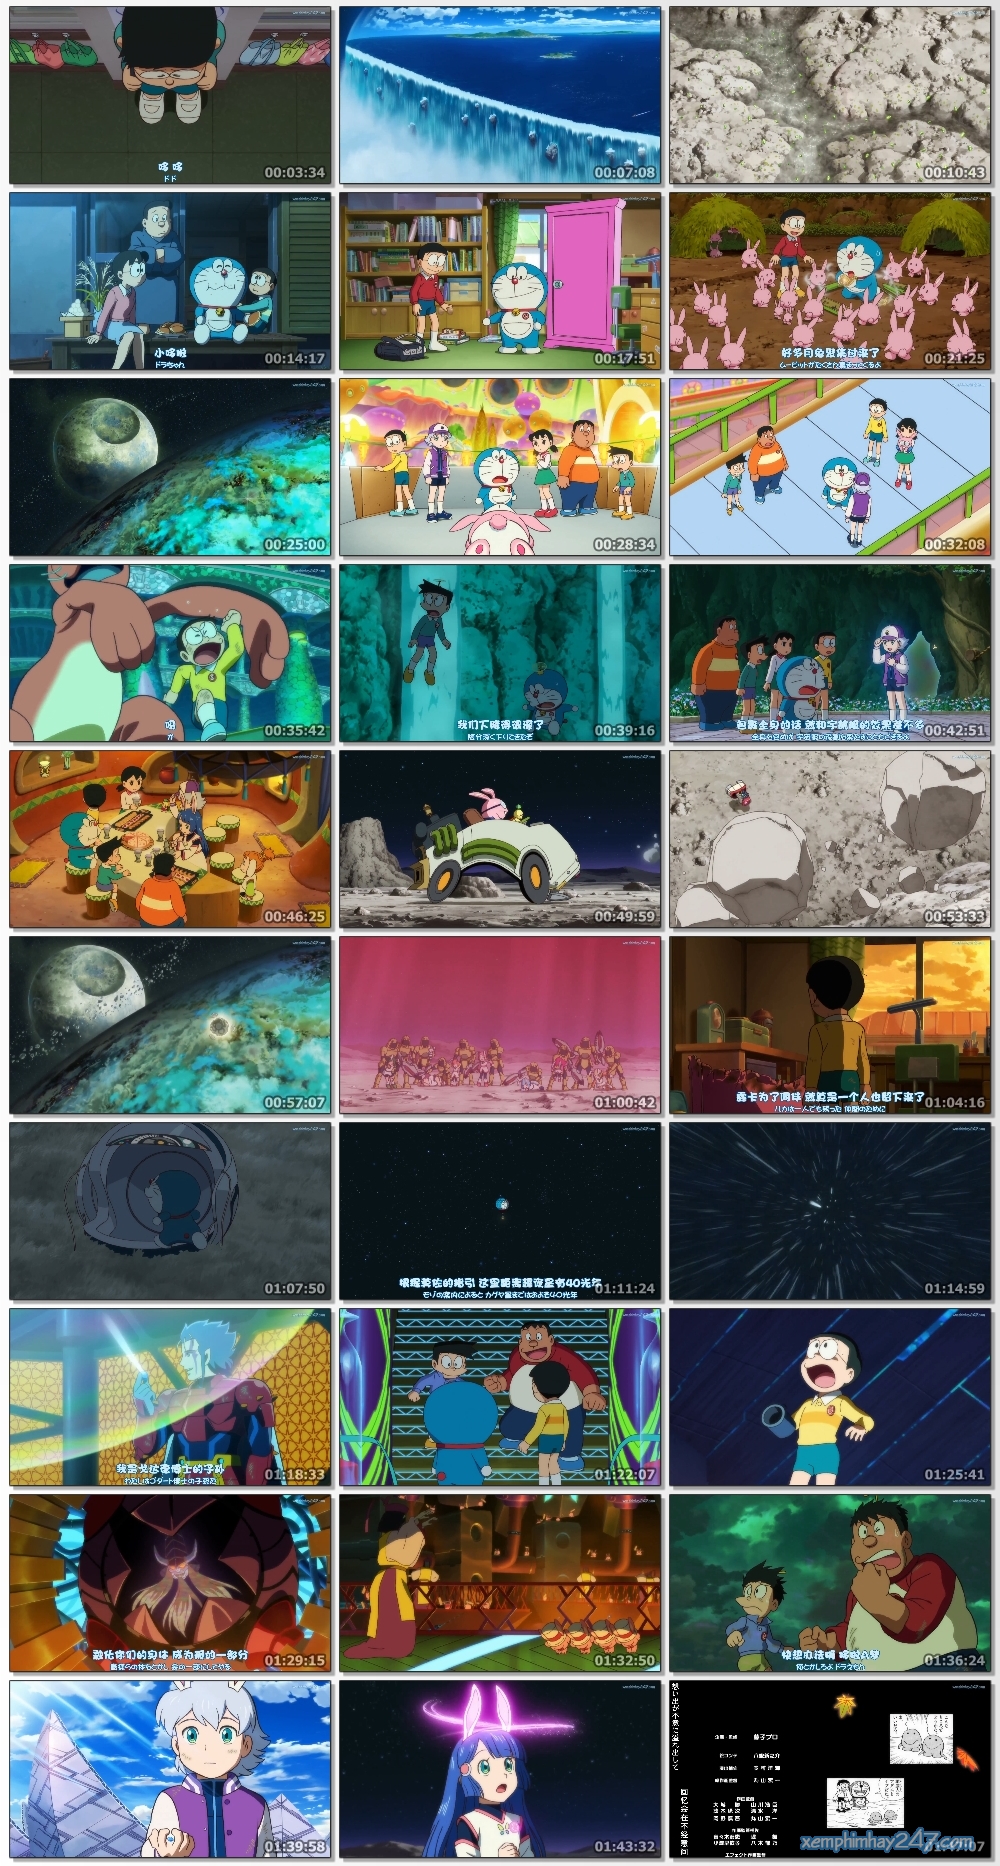 http://xemphimhay247.com - Xem phim hay 247 - Doraemon: Nobita Và Chuyến Thám Hiểm Mặt Trăng (2019) - Nobita's Chronicle Of The Moon Exploration (2019)